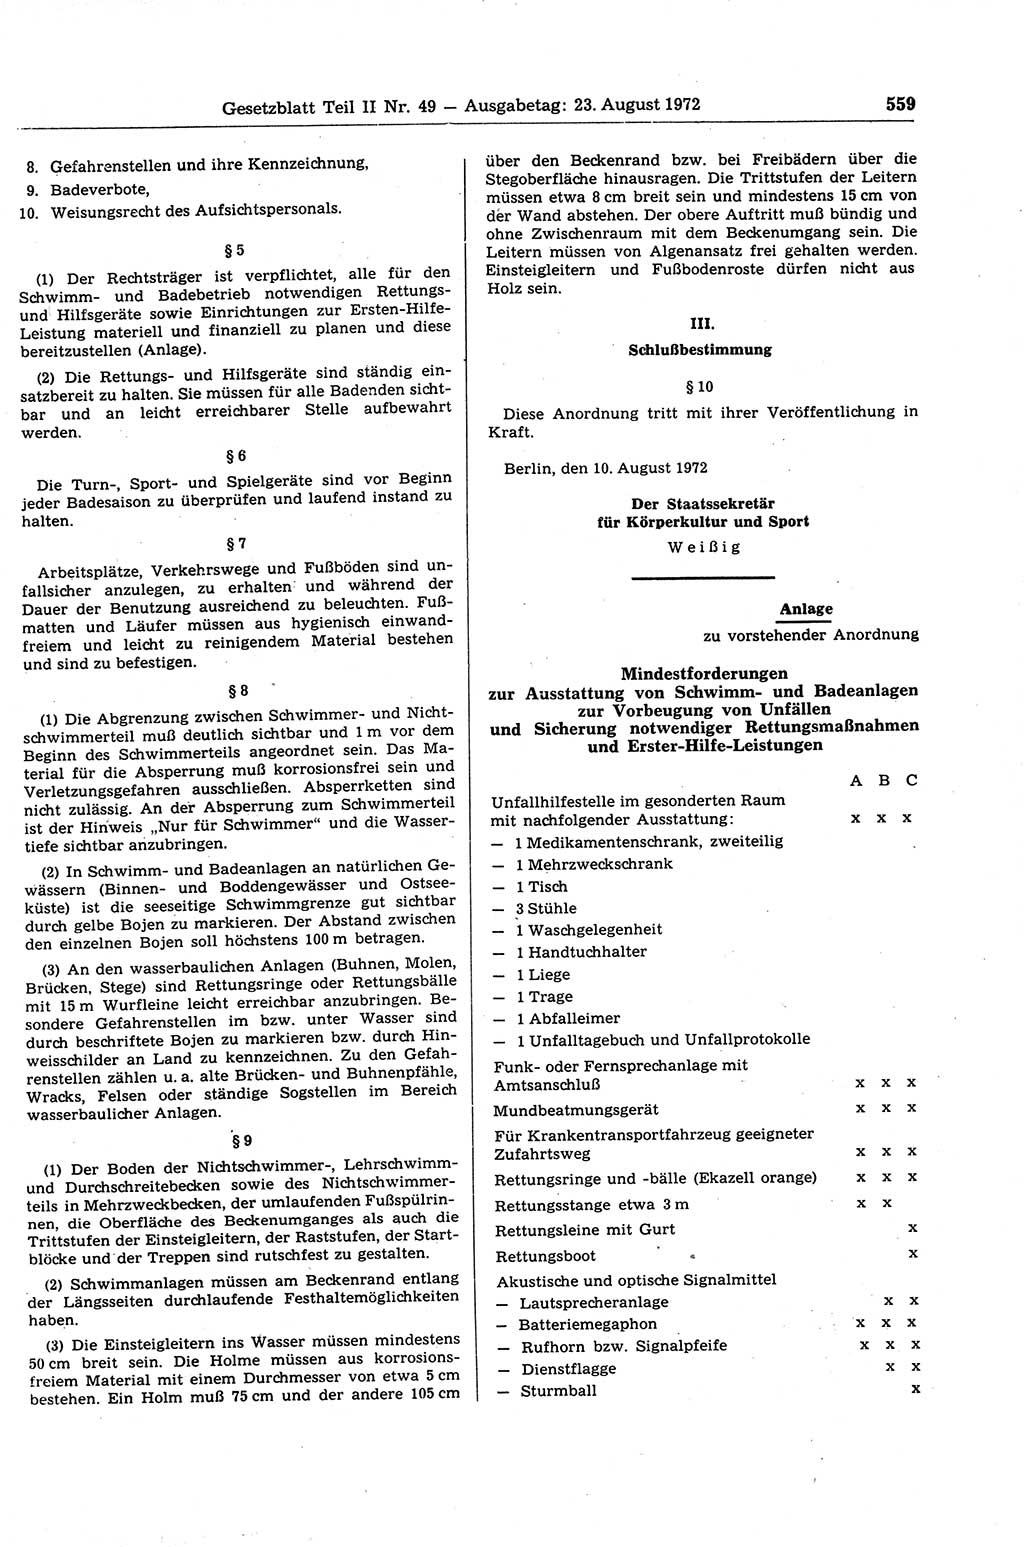 Gesetzblatt (GBl.) der Deutschen Demokratischen Republik (DDR) Teil ⅠⅠ 1972, Seite 559 (GBl. DDR ⅠⅠ 1972, S. 559)